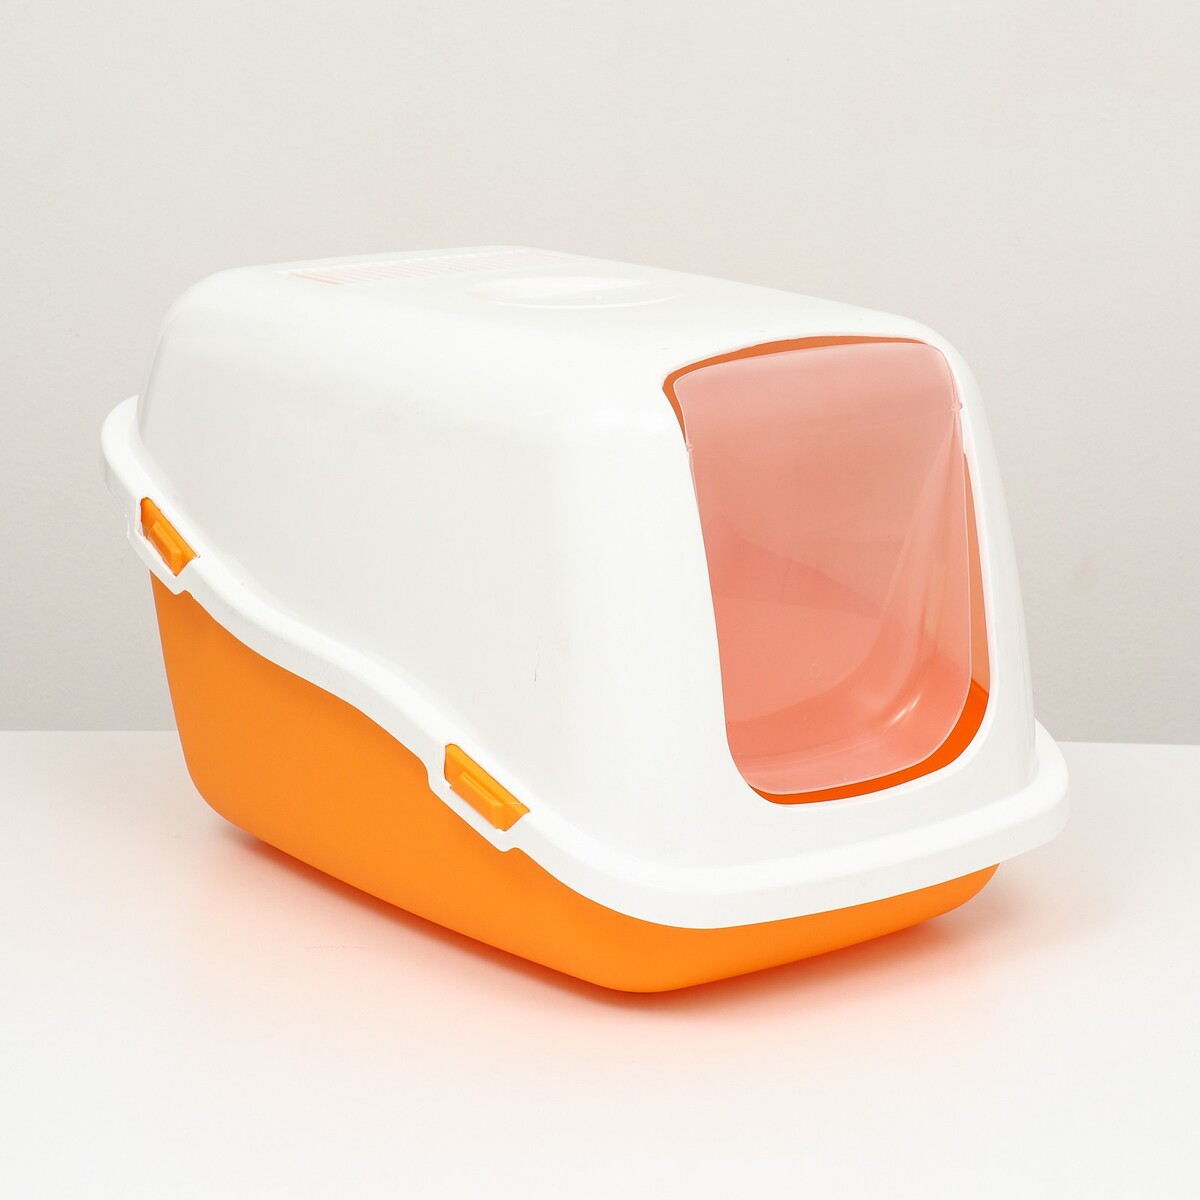 Pet-it домик-туалет для кошек comfort, (совок в наборе), 57x39x41, оранжевый/белый фонари велосипедные bike parts jy 503c 11 на ниппель 2 штуки в наборе 11 диодов белый х54095